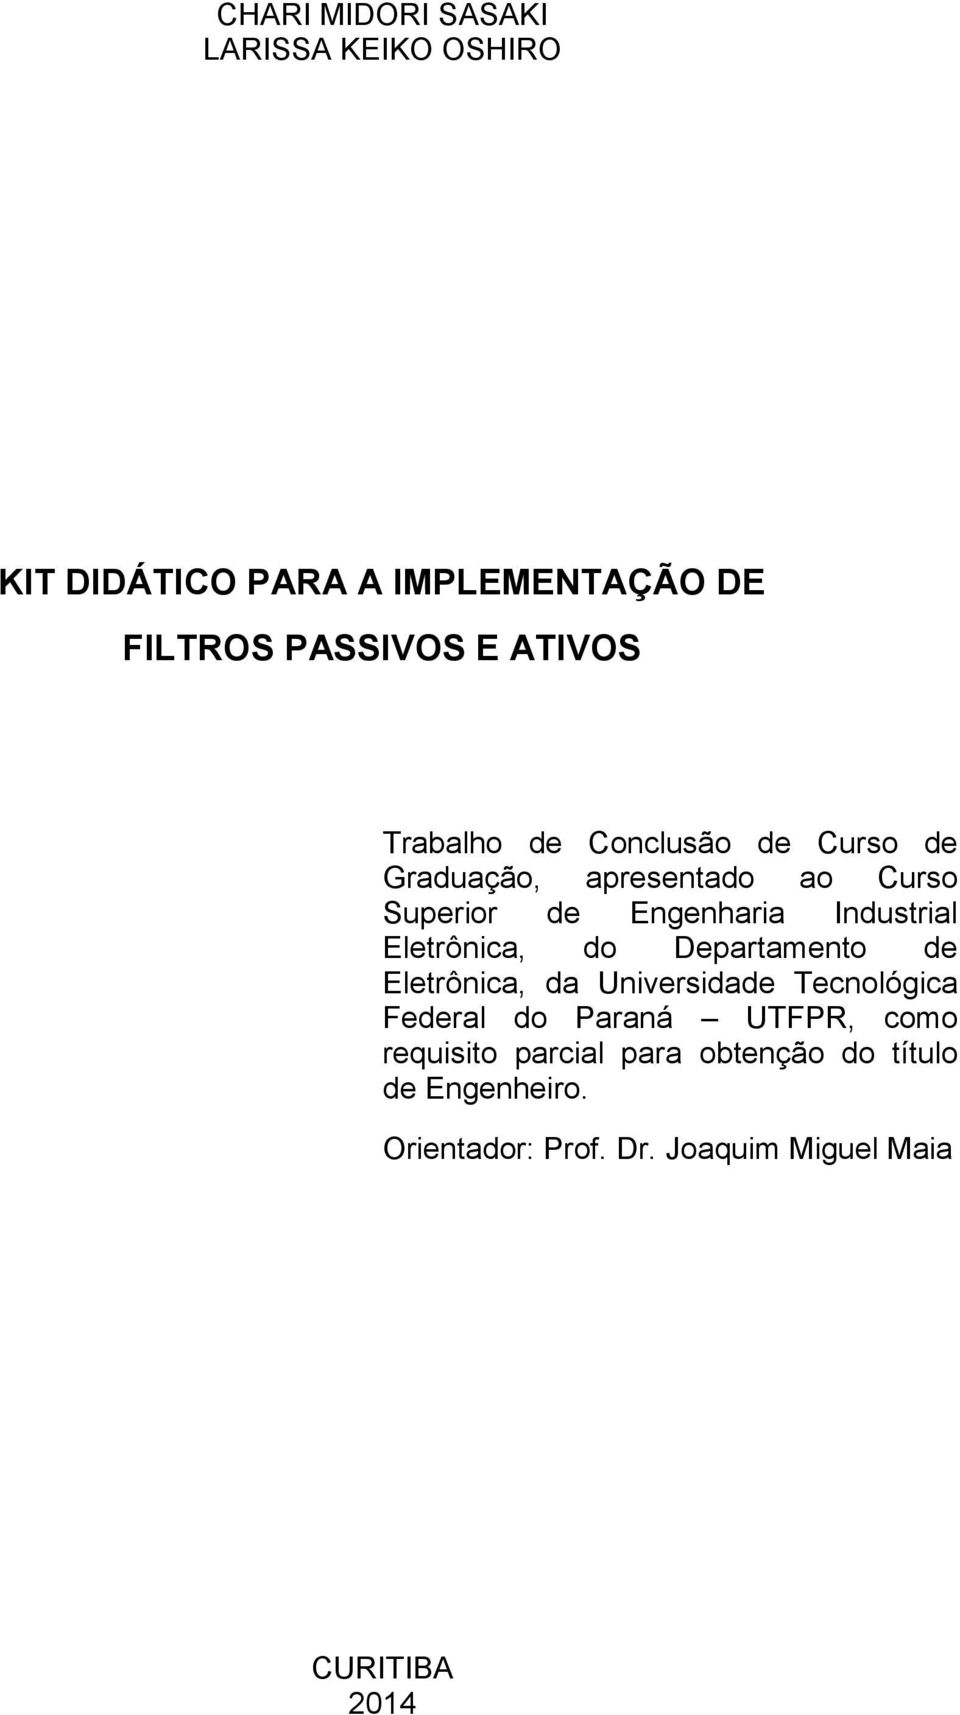 Eletrônica, do Departamento de Eletrônica, da Universidade Tecnológica Federal do Paraná UTFPR, como